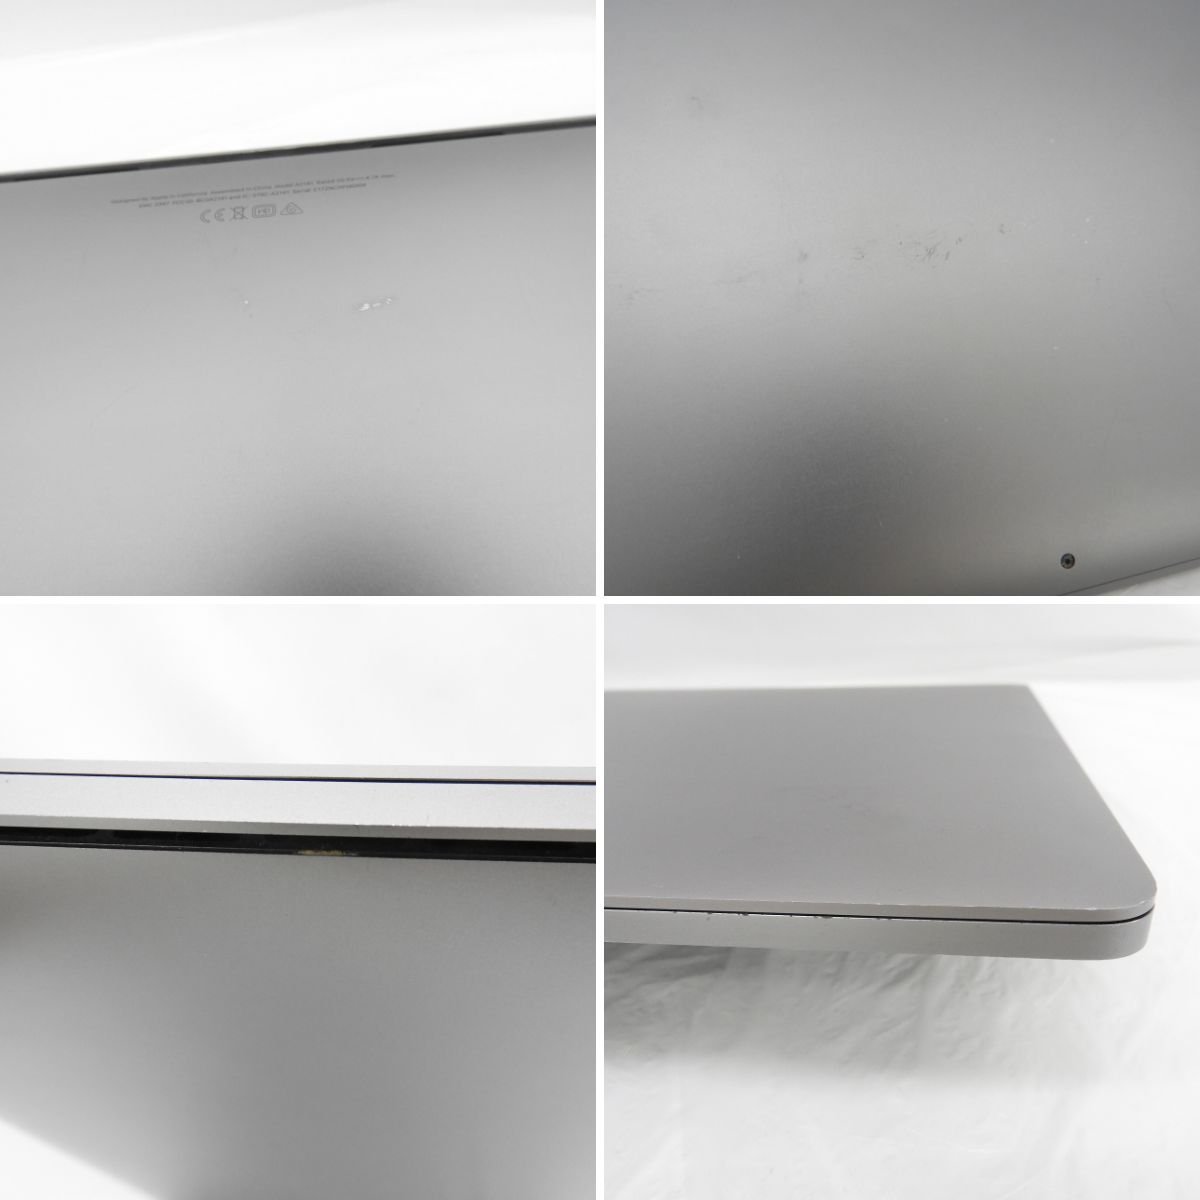 【難有/中古品】Apple MacBook Pro 2019 16インチ A2141 スペースグレイ corei7/16GB/SSD512GB ※BT修理サービス表示 11513213 0305_画像6